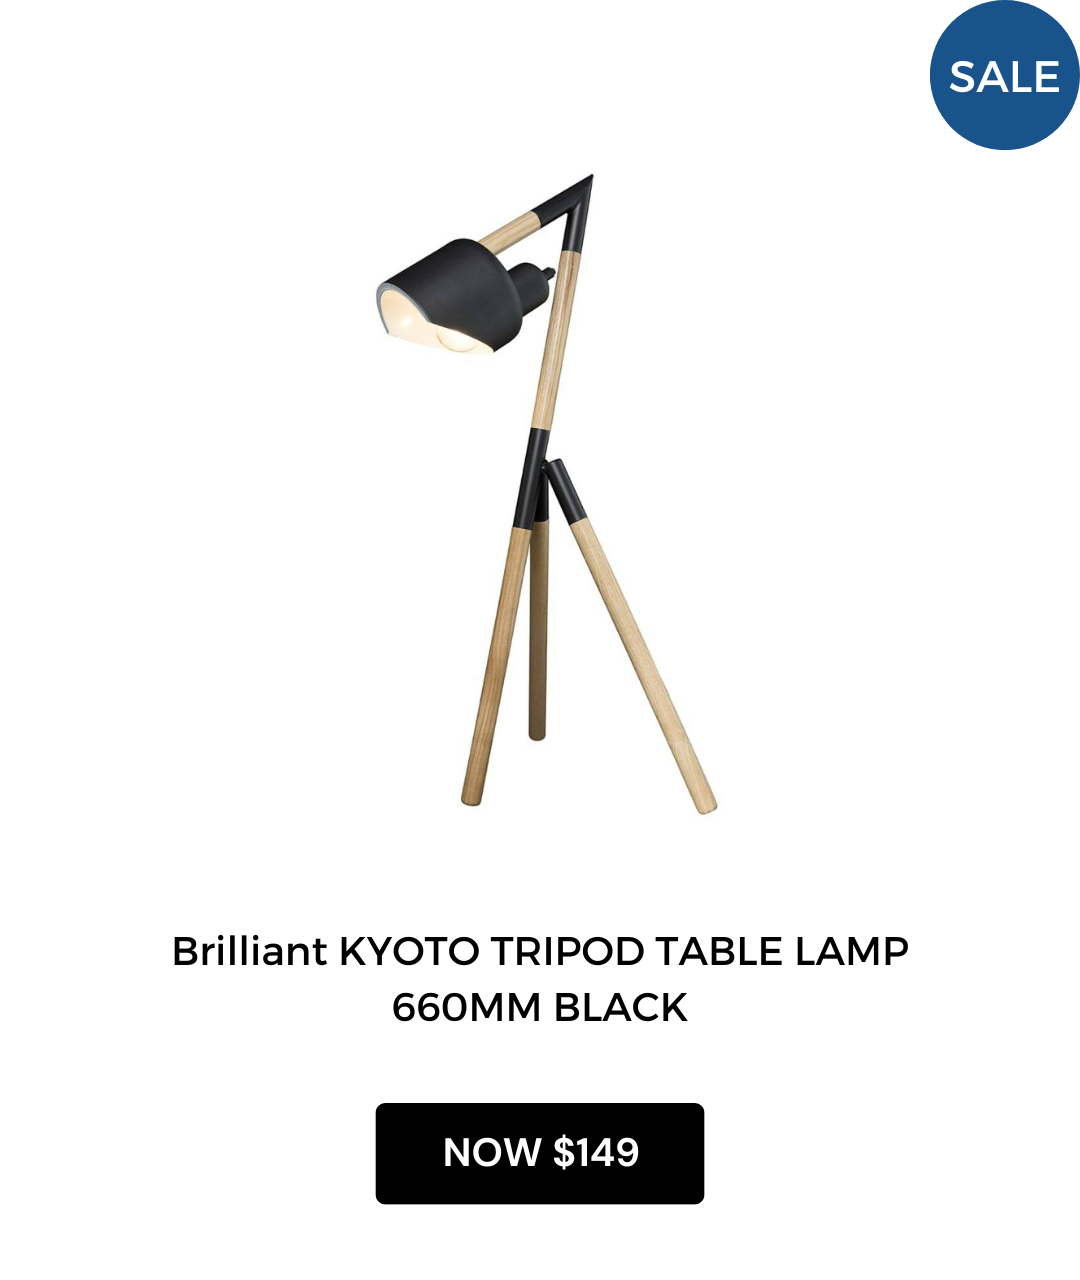 Brilliant KYOTO TRIPOD TABLE LAMP 660MM BLACK